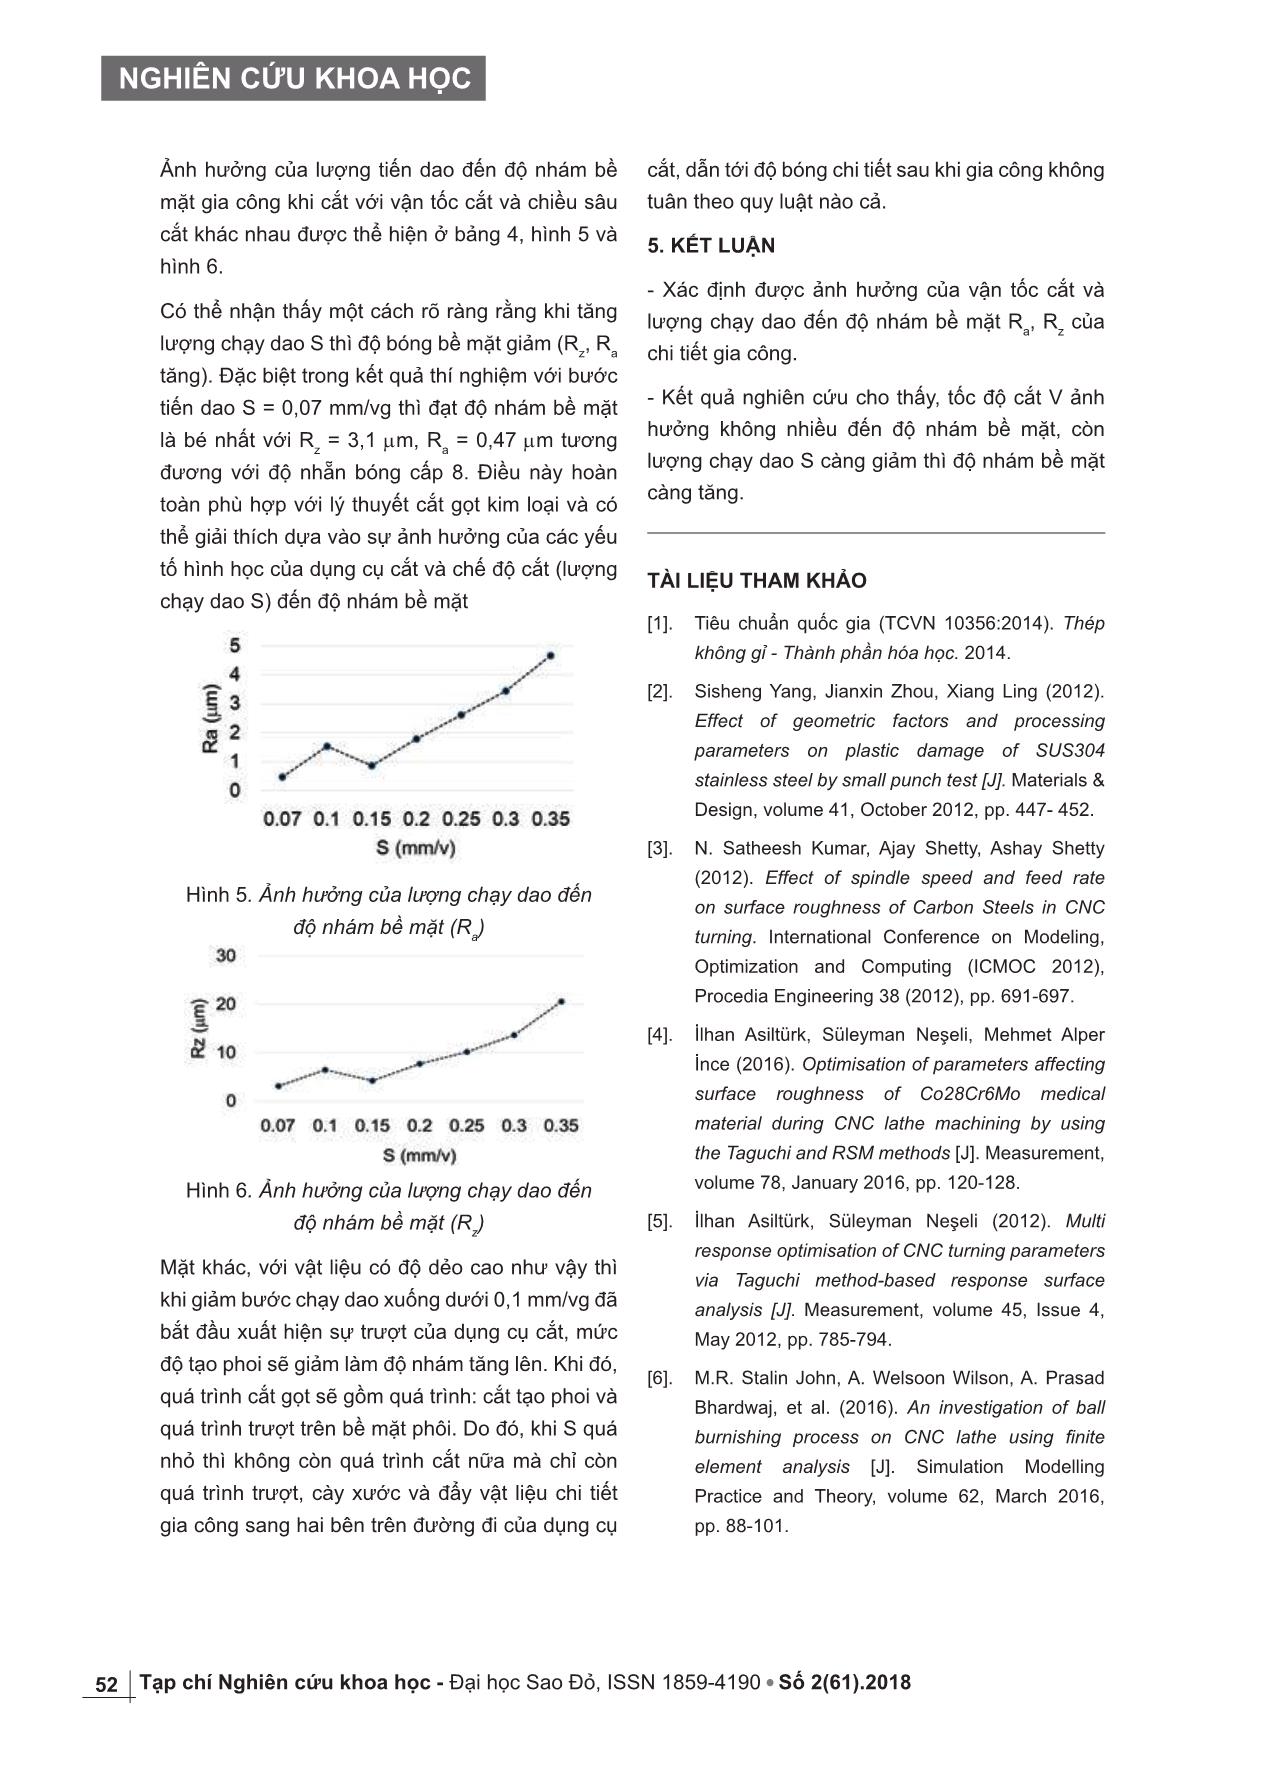 Nghiên cứu ảnh hưởng của thông số công nghệ đến độ nhám bề mặt khi gia công thép SUS304 trên máy tiện CNC trang 4